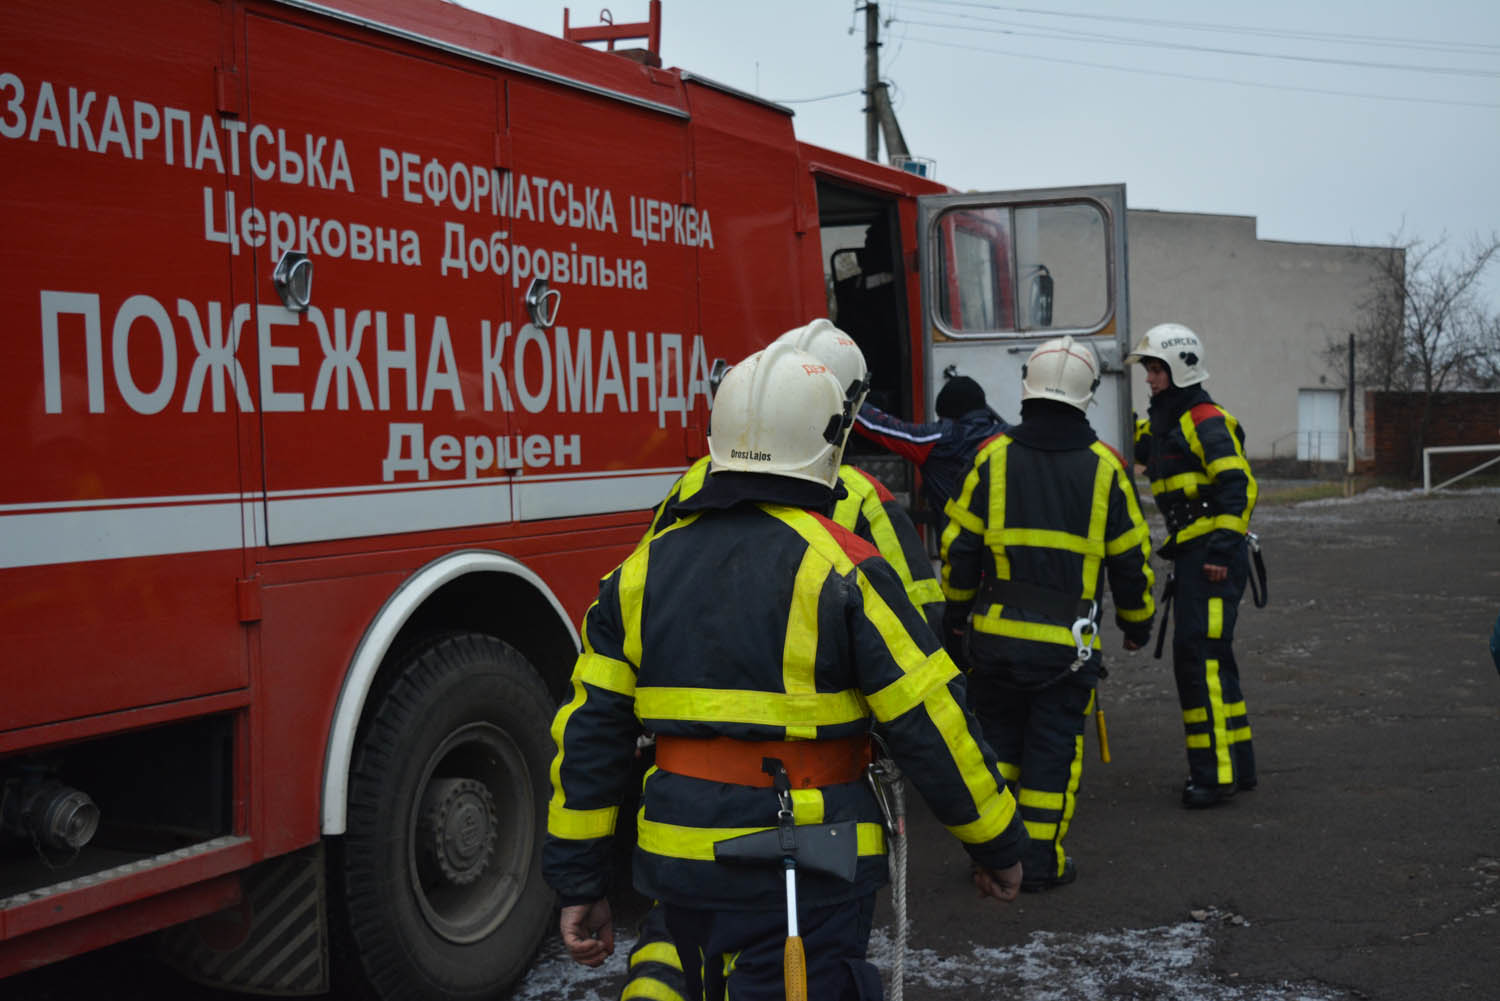 05 листопада о 17:25 до рятувальників Мукачівського району надійшло повідомлення про пожежу в житловому будинку села Дерцен.